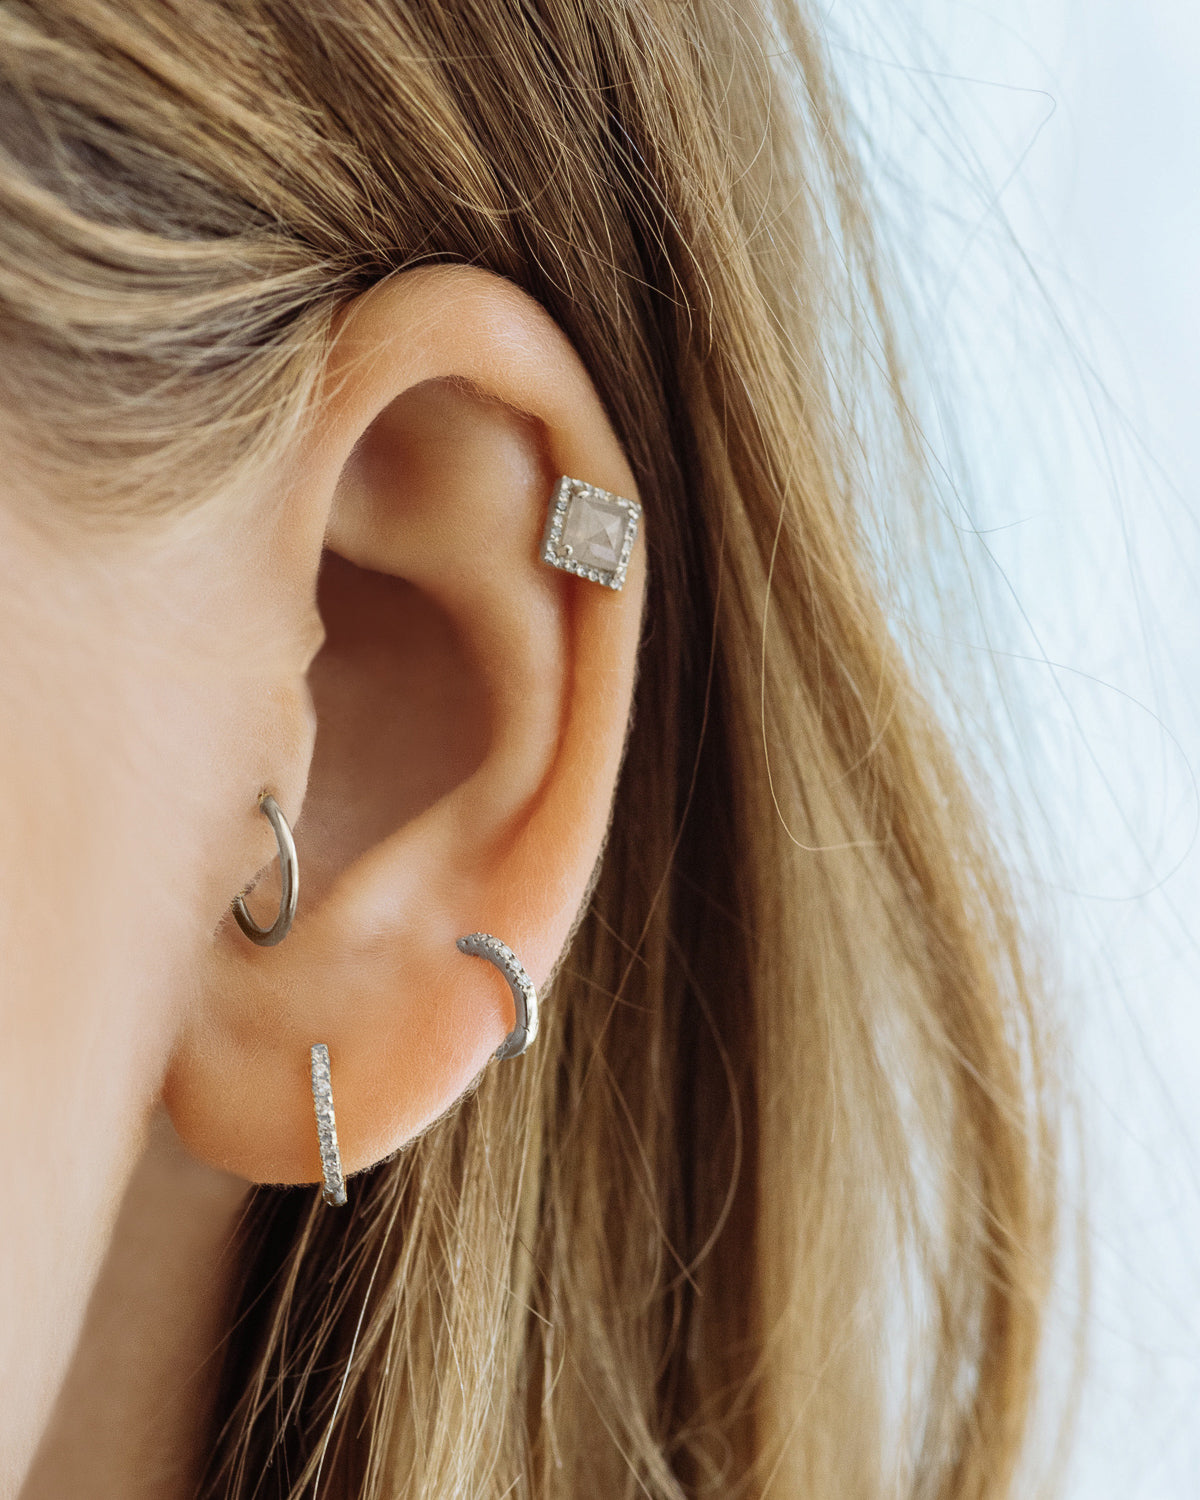 Luv Aj Sorrento Huggie Hoop Earring Set in Rhodium with Swarovski Crystals